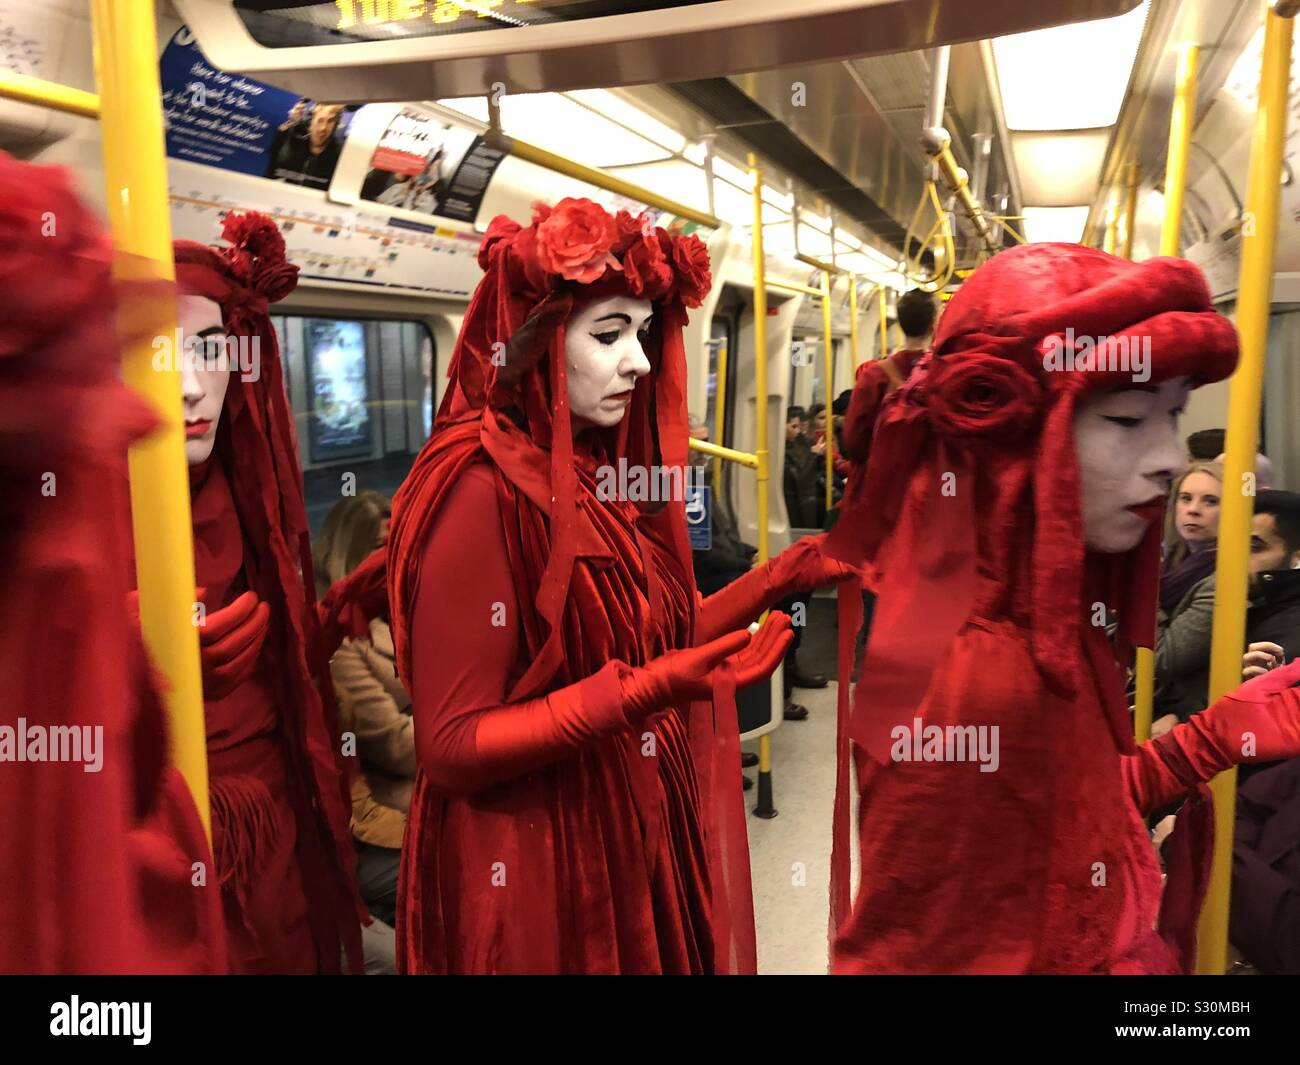 Brigade rouge de l'extinction La rébellion prendre le métro Banque D'Images